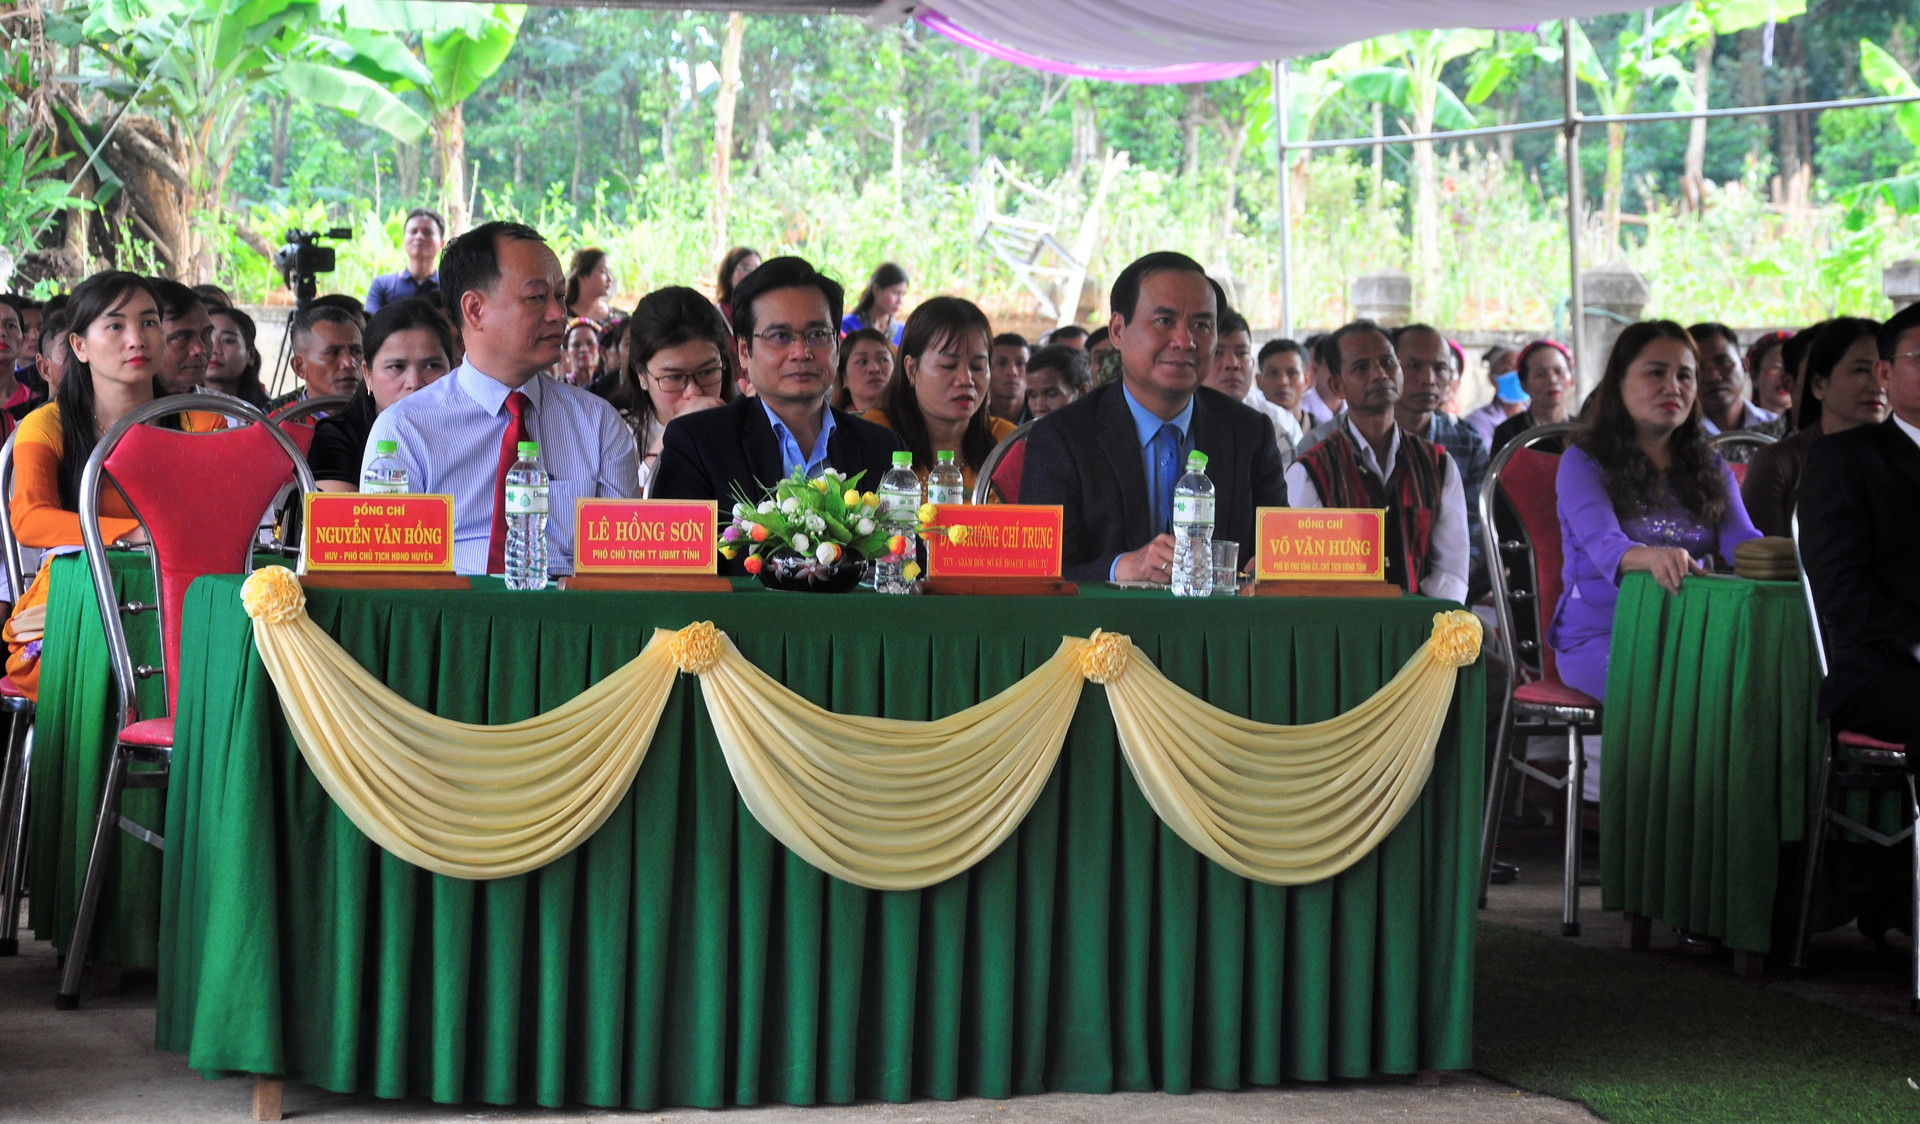 Ngày hội có sự tham dự của nhiều lãnh đạo tỉnh Quảng Trị, huyện Gio Linh… và Nhân dân khu dân cư Bến Hà.